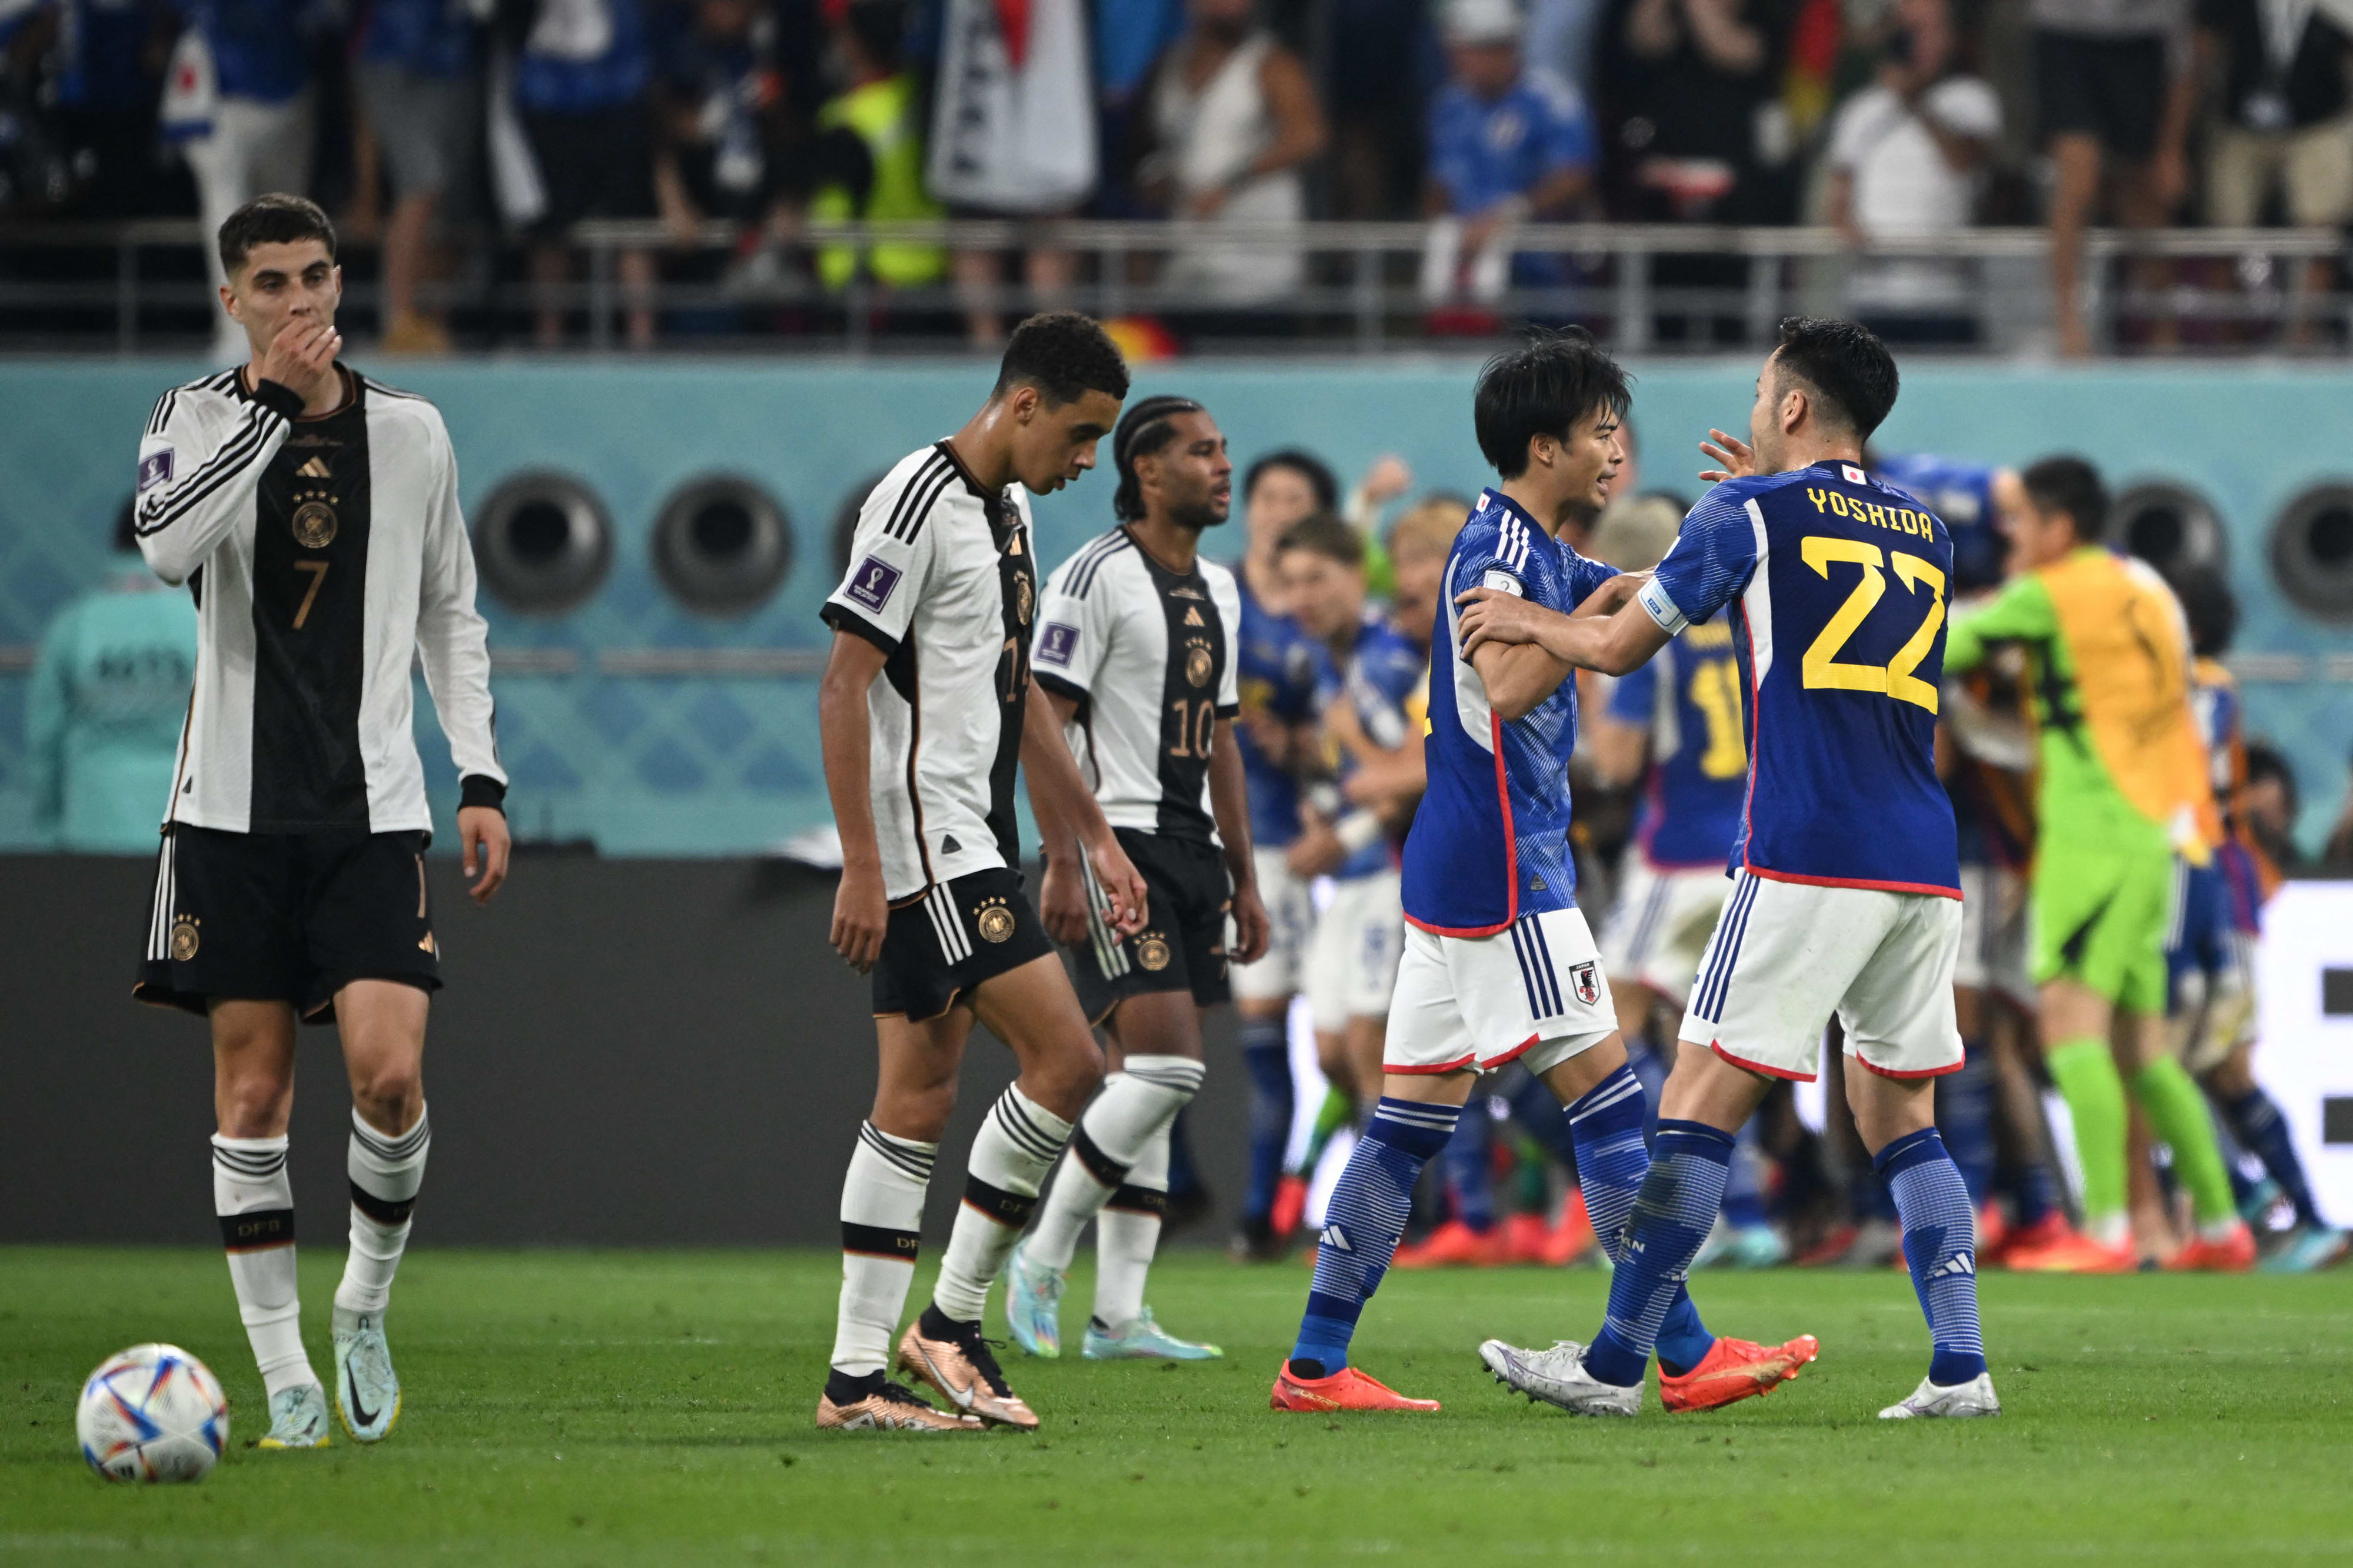 שחקני נבחרת יפן חוגגים מול שחקני נבחרת גרמניה המאוכזבים